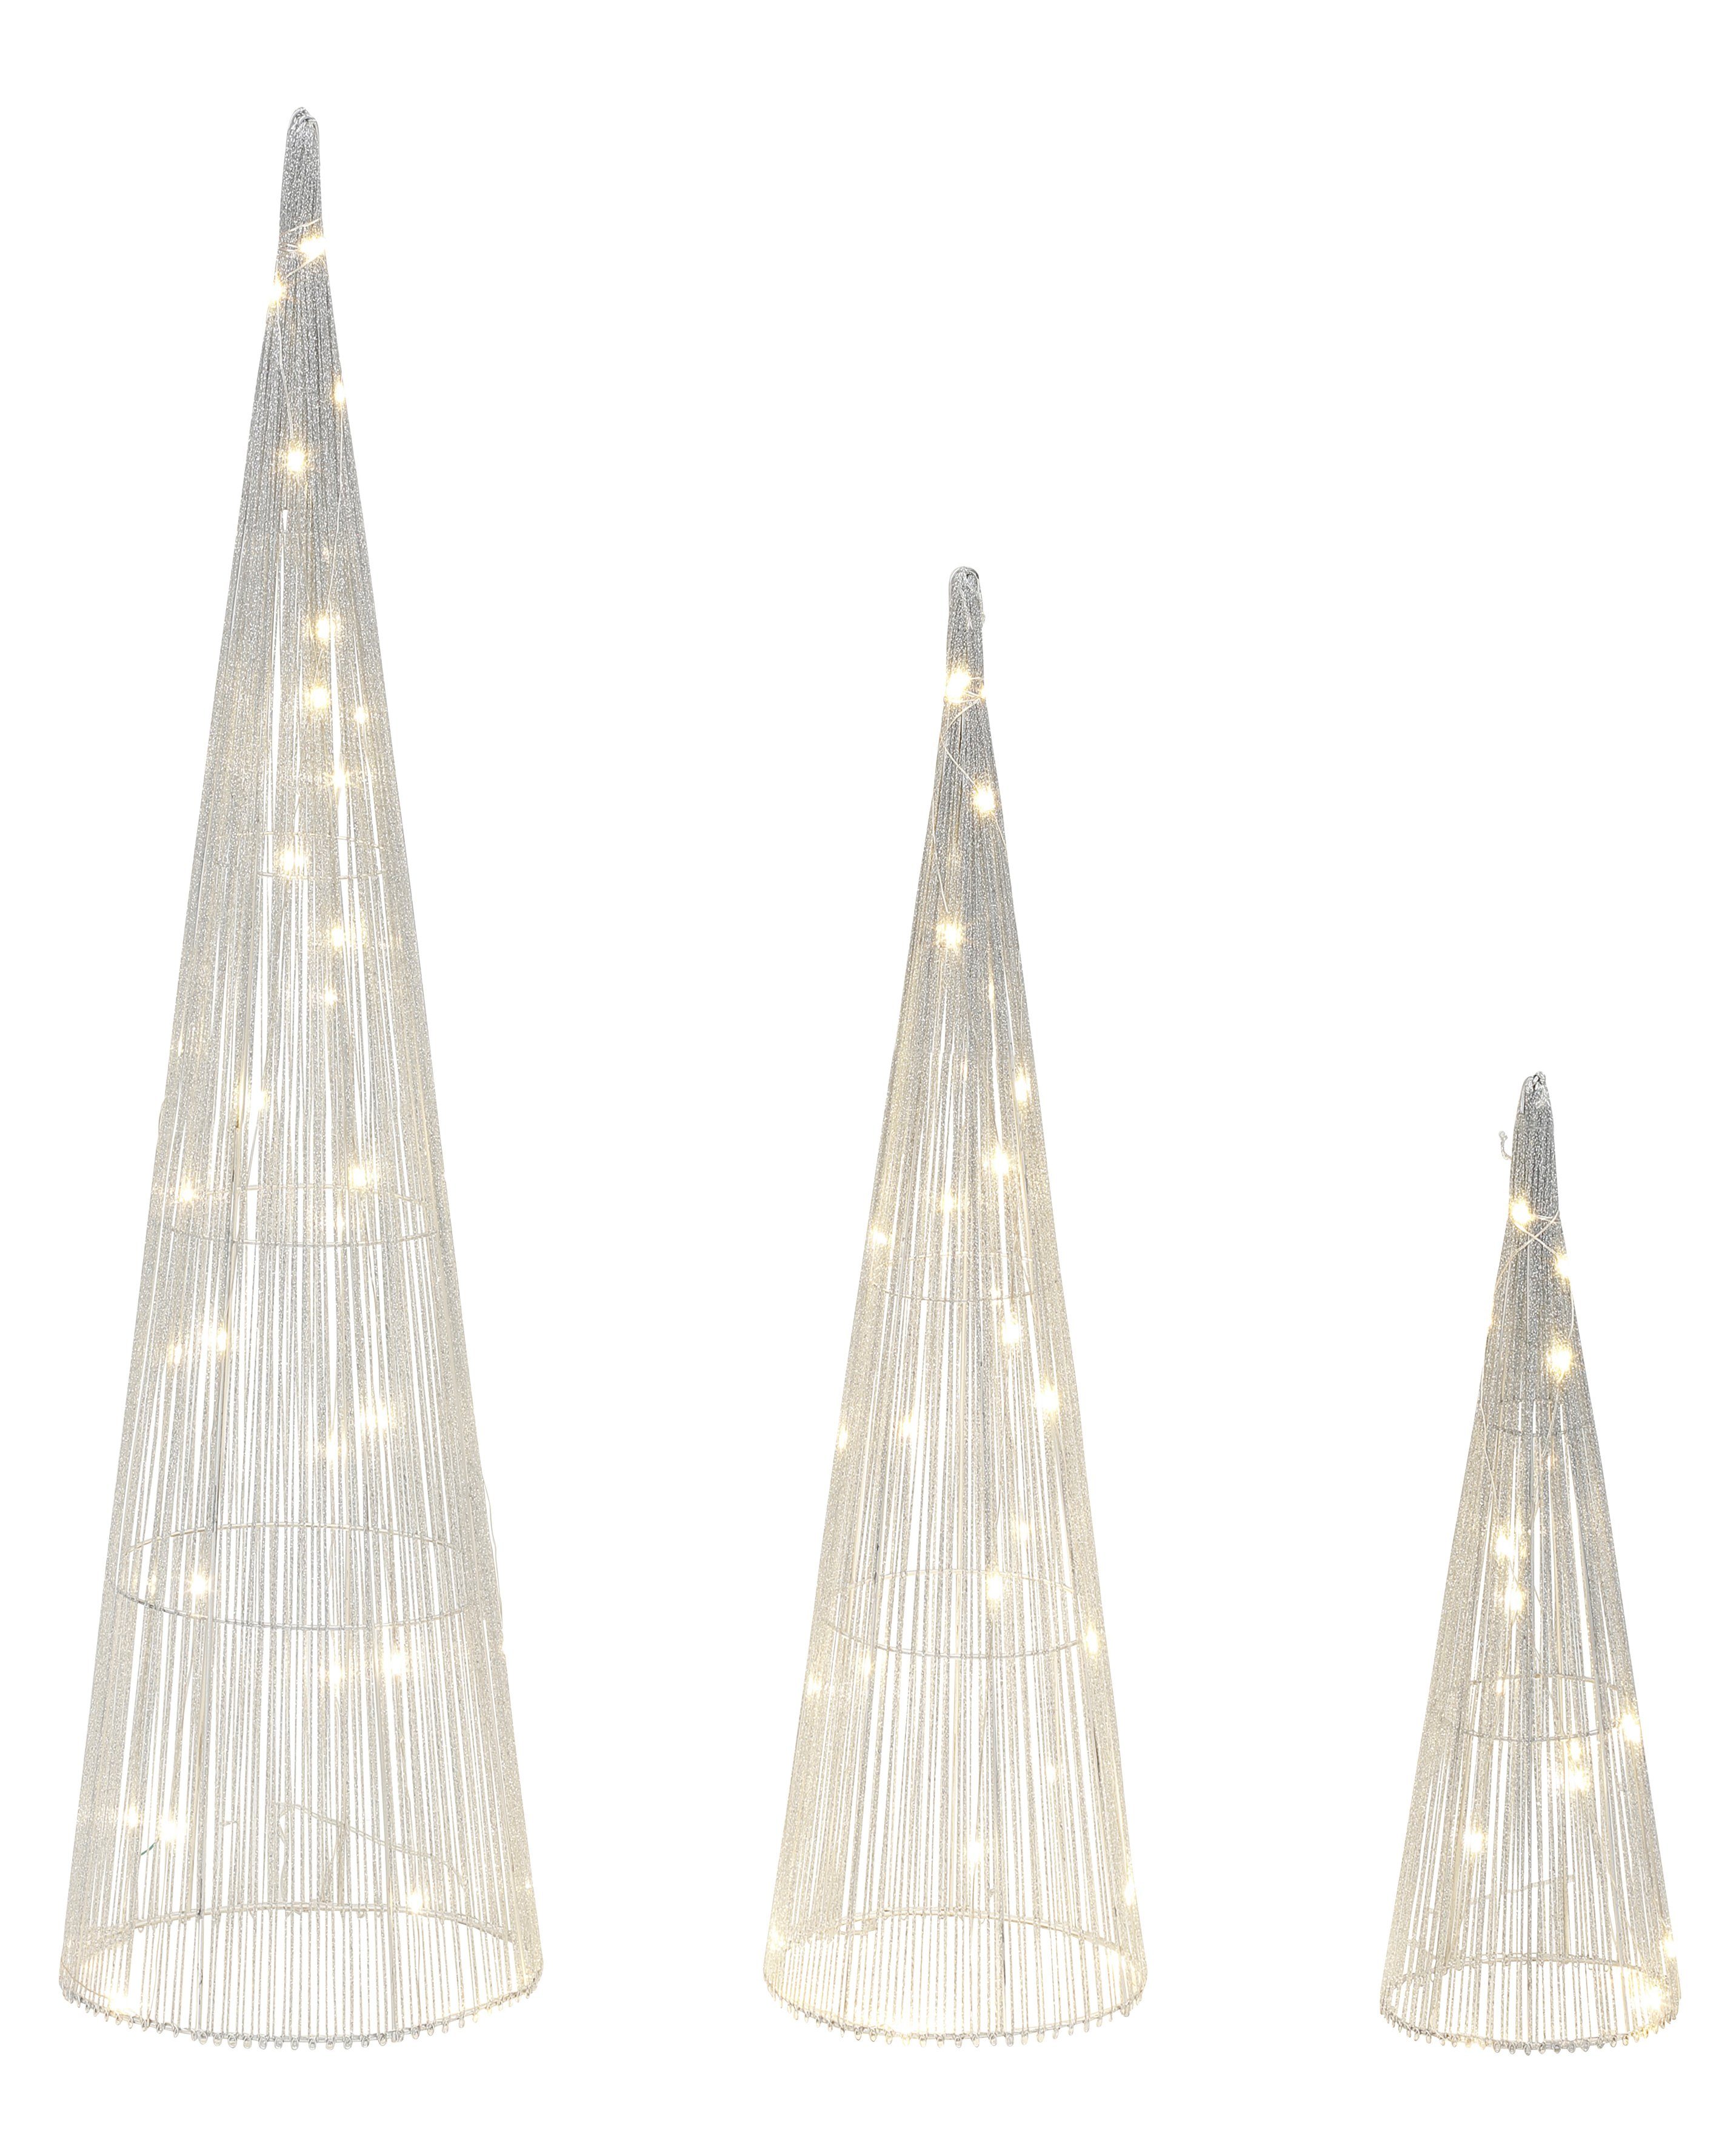 schimmernde Pyramiden LED Effektvolle LED-Beleuchtung, Größen integriert, Dekolicht in LED-Bäume, Warmweiß, Weihnachtsdeko, 3 Pyramiden LED Star-Max Leucht fest silberfarben mit